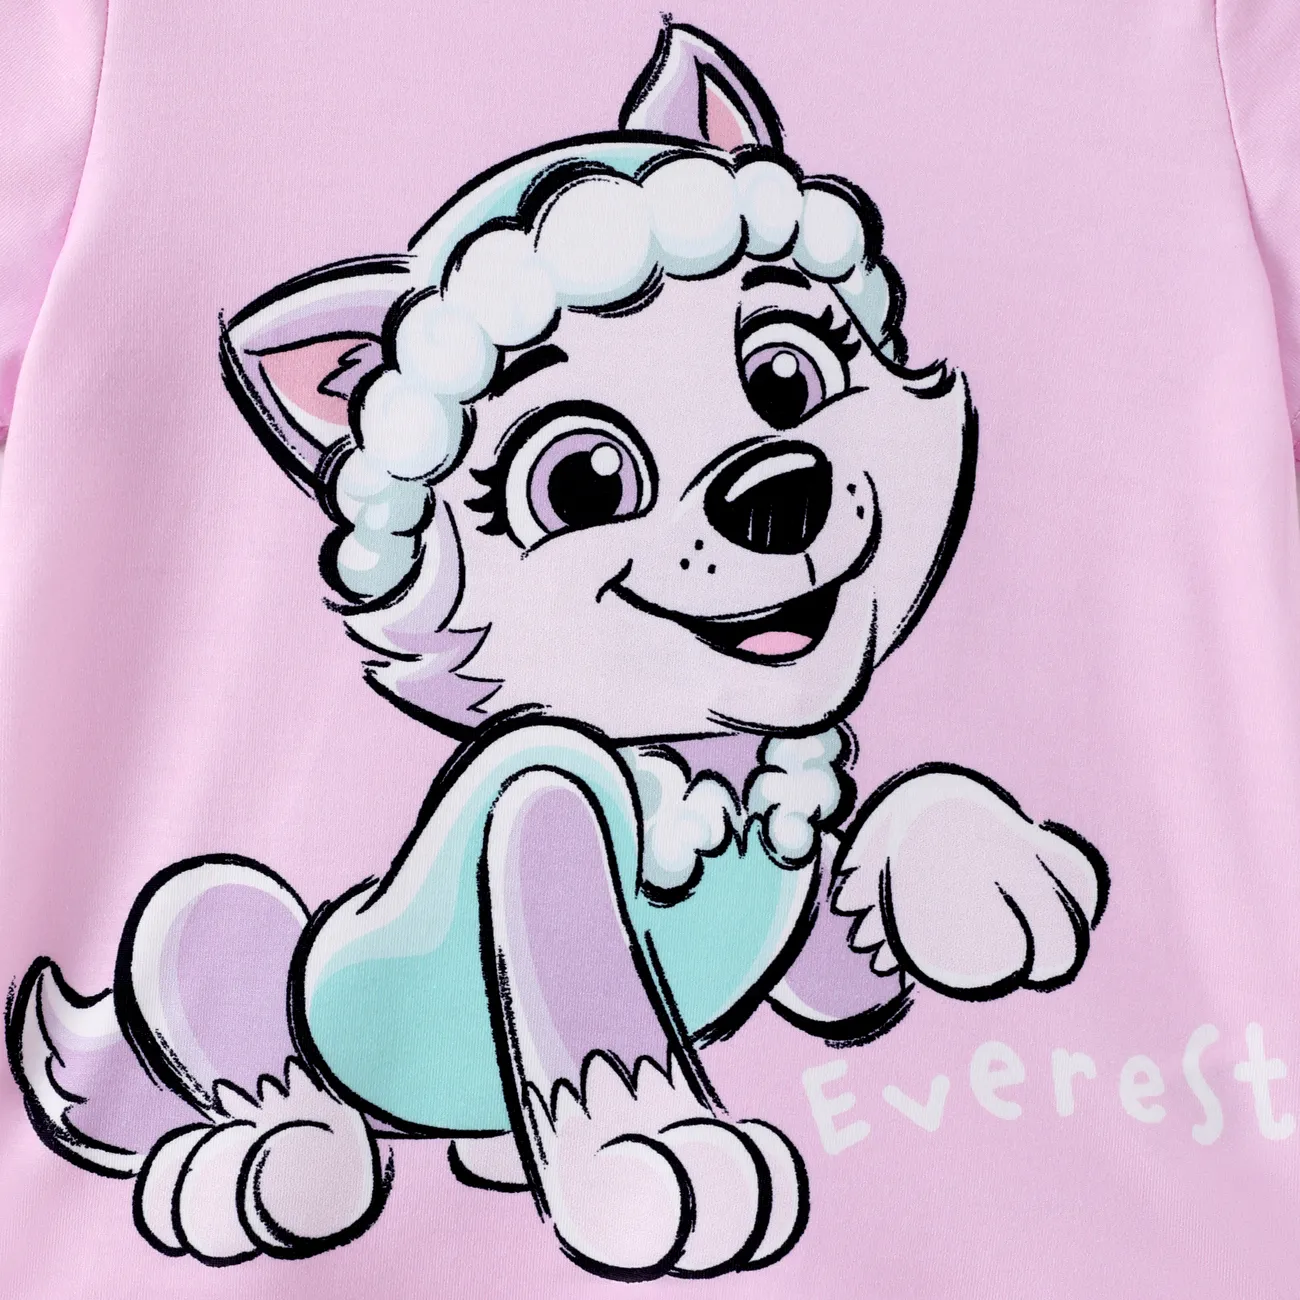 Patrulla de cachorros Unisex Infantil Camiseta Violeta claro big image 1